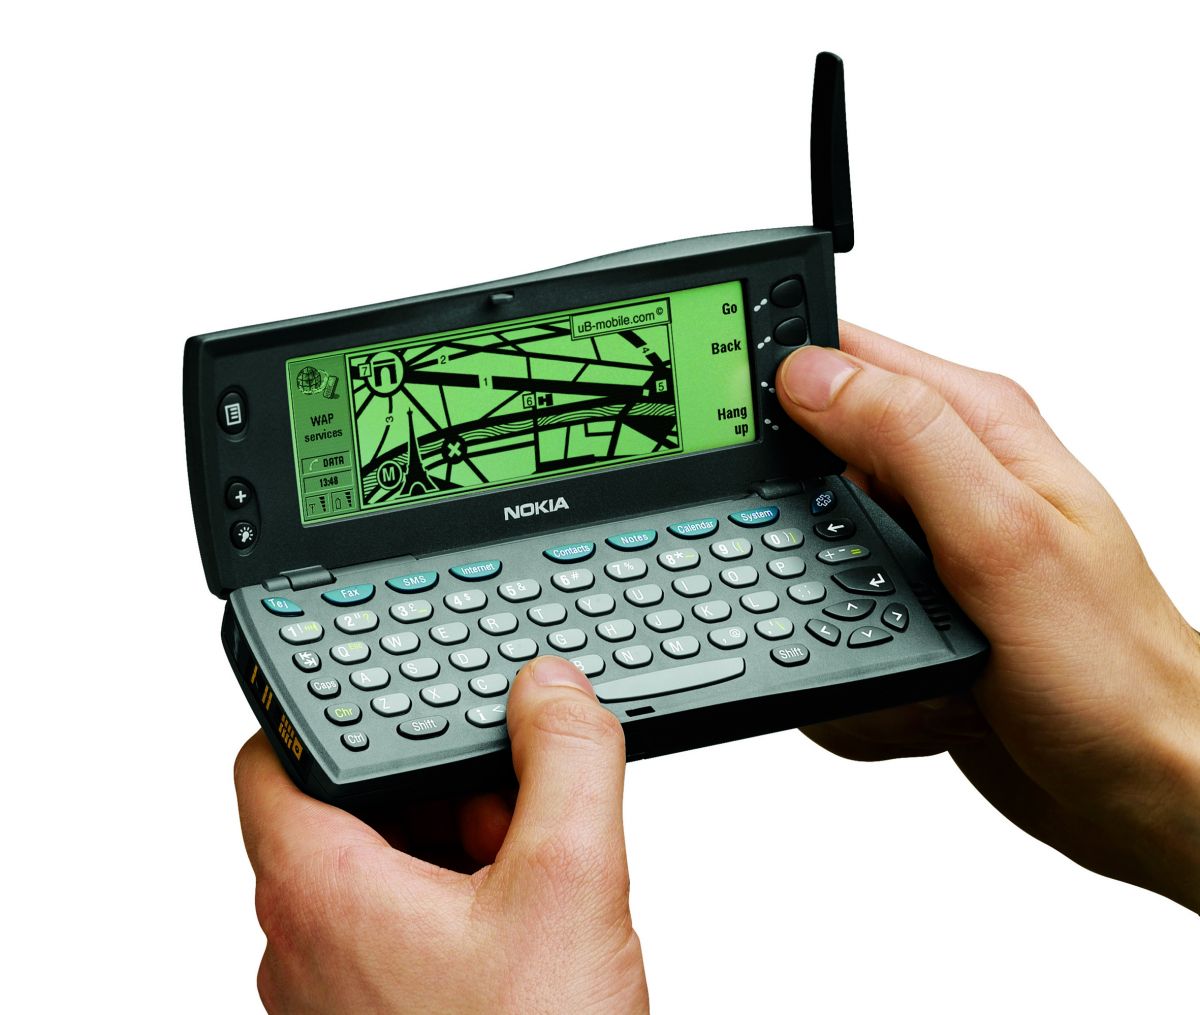 Nokia 9110i Communicator